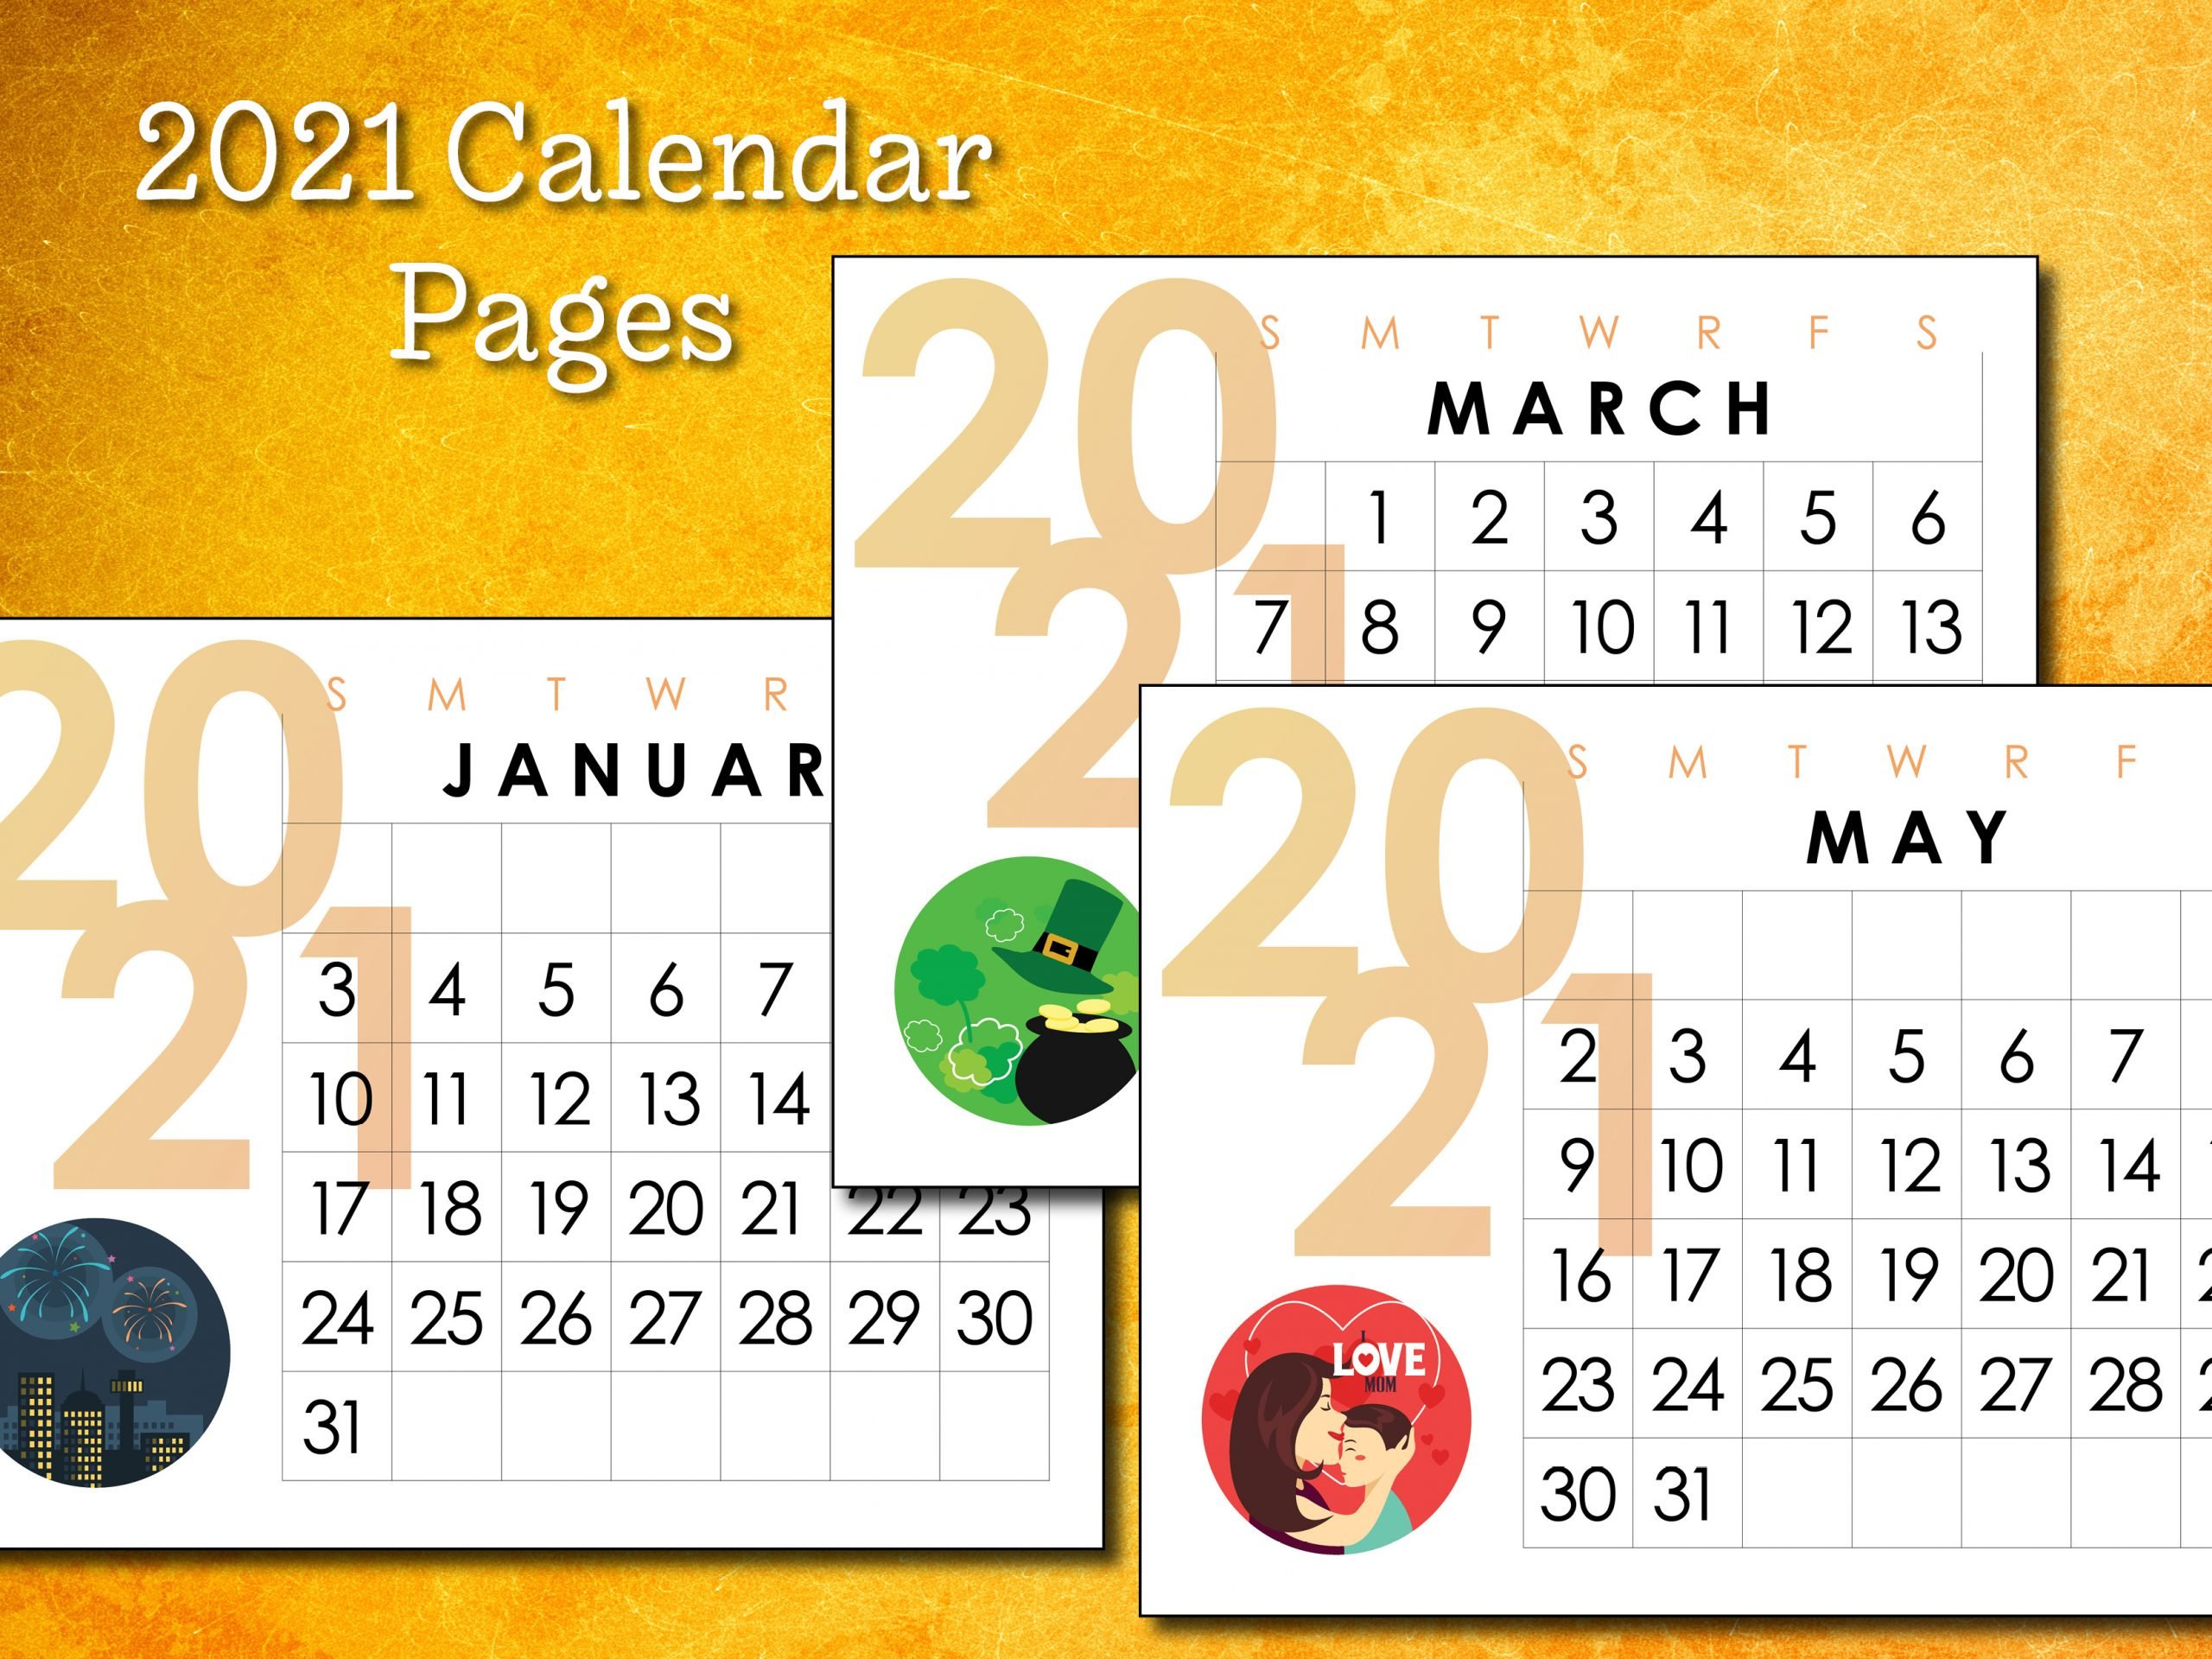 2021 Calendar Pages